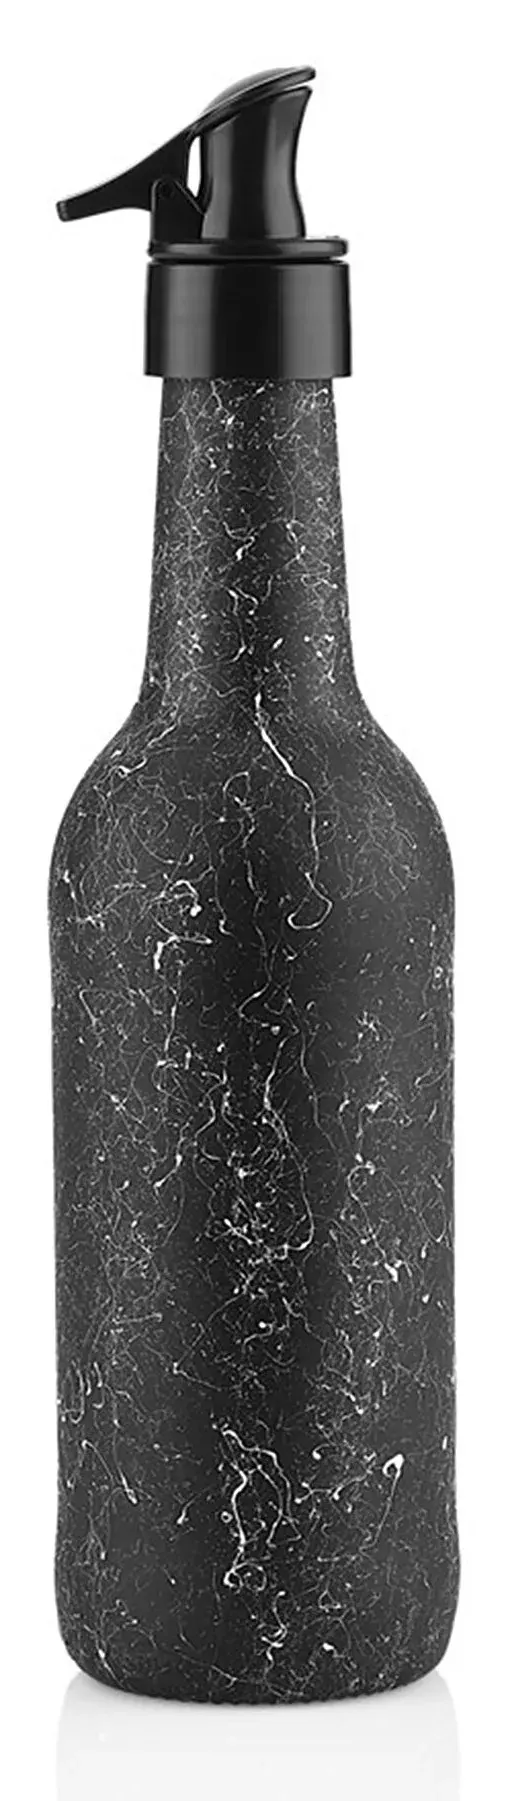 Granite Marble oil and vinegar bottle, 750 ml, black and white